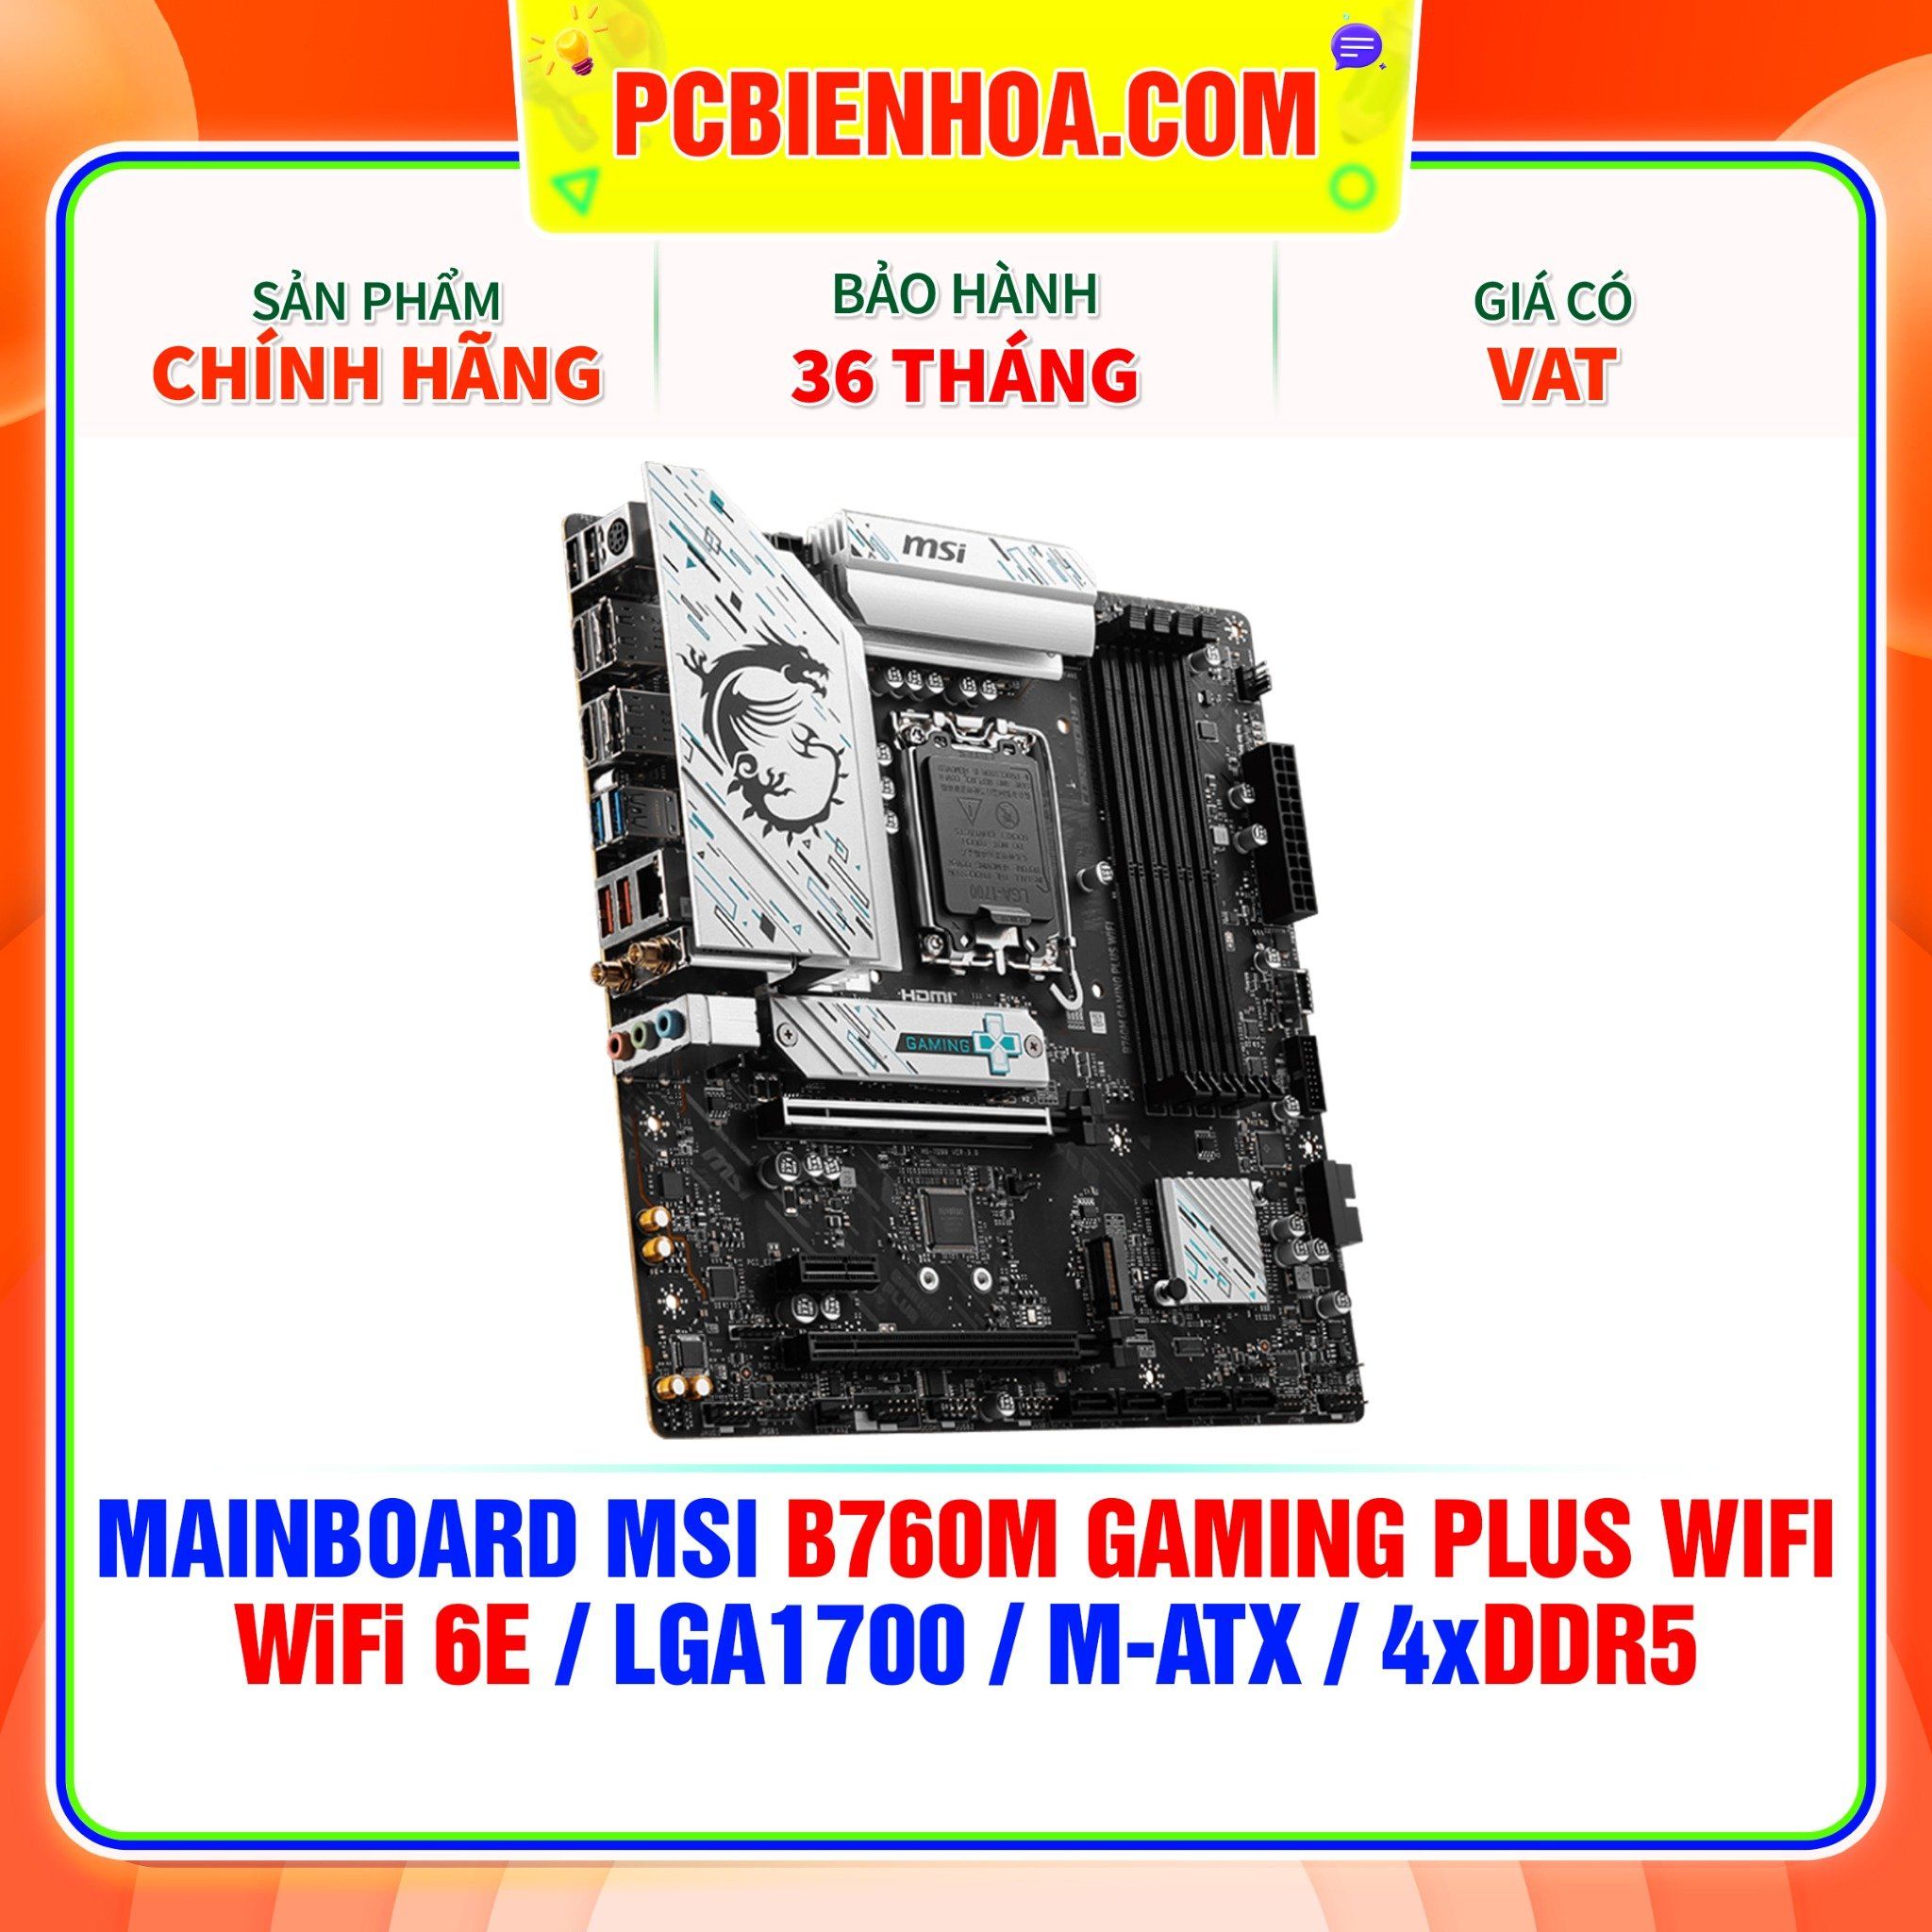  DDR5 - MAINBOARD MSI B760M GAMING PLUS WIFI ( WiFi 6E / LGA1700 / M-ATX / 4xDDR5 ) 